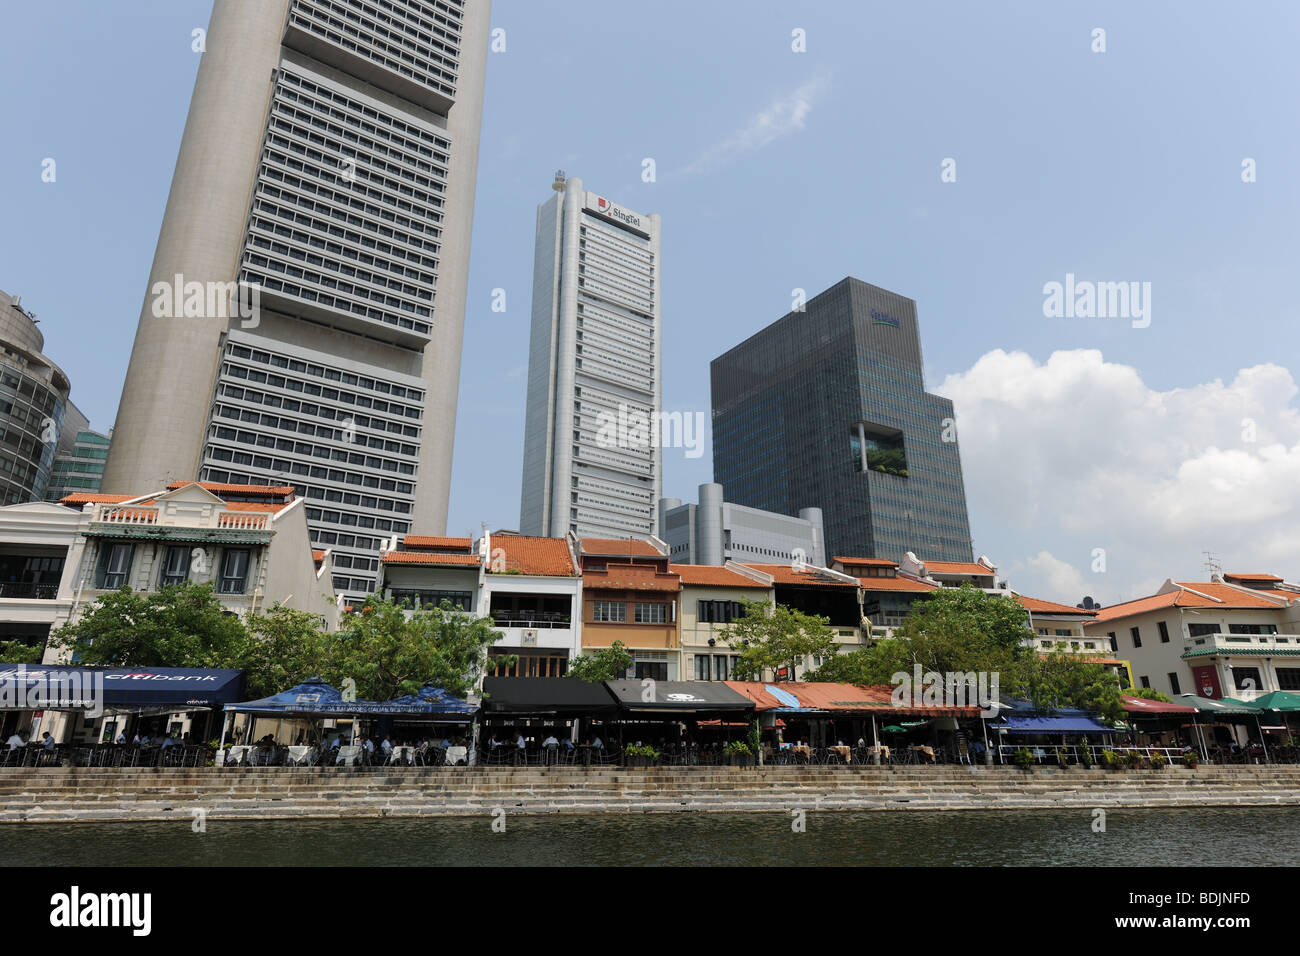 Restaurato di vecchie botteghe e magazzini in contrasto con i moderni grattacieli, il fiume Singapore, Singapore Foto Stock